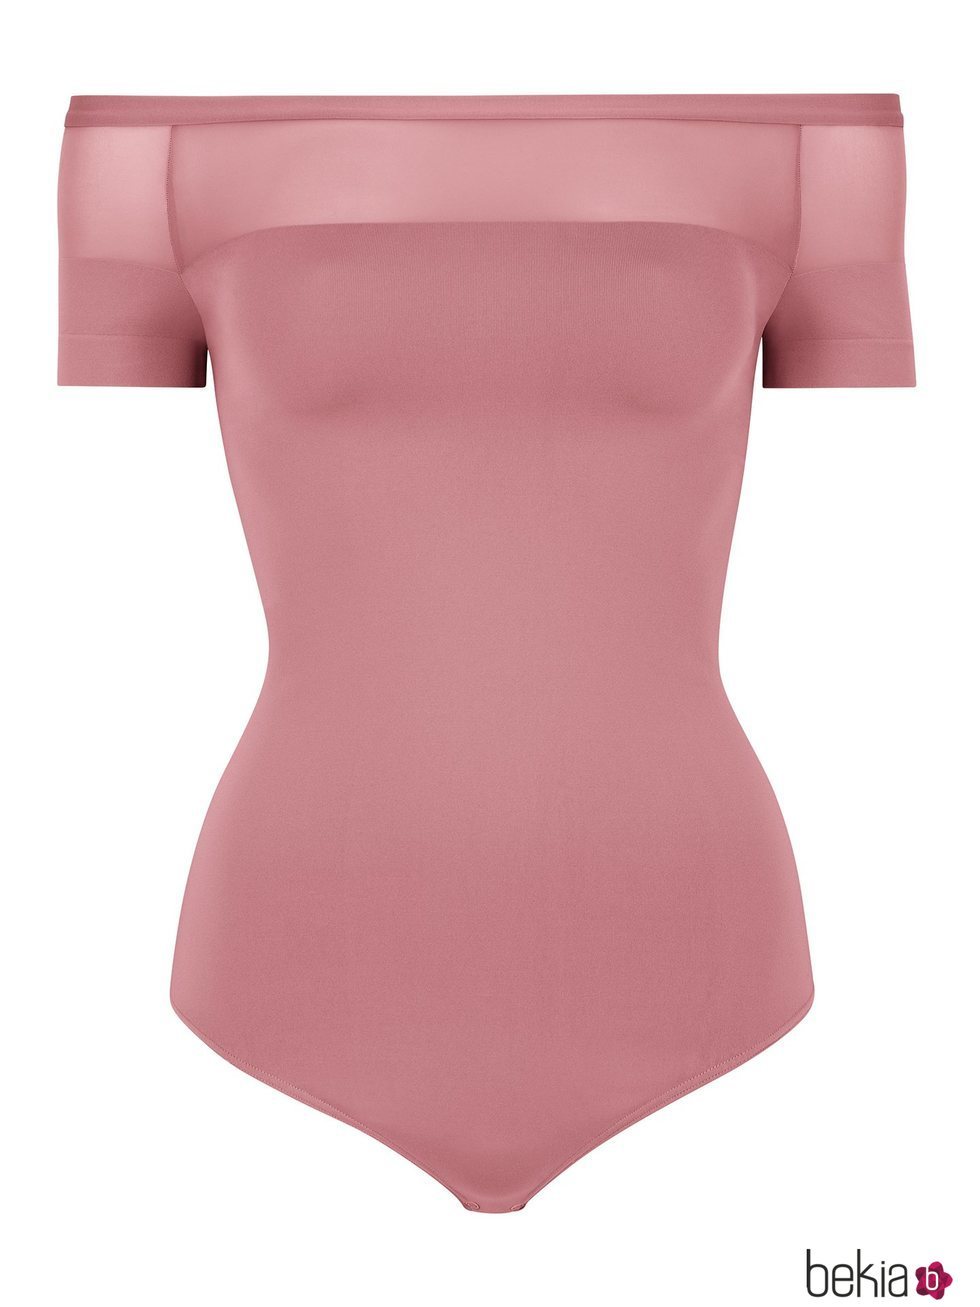 Body en color rosa con los hombros al aire de la firma Wolford de la campaña para el día de la madre 2018